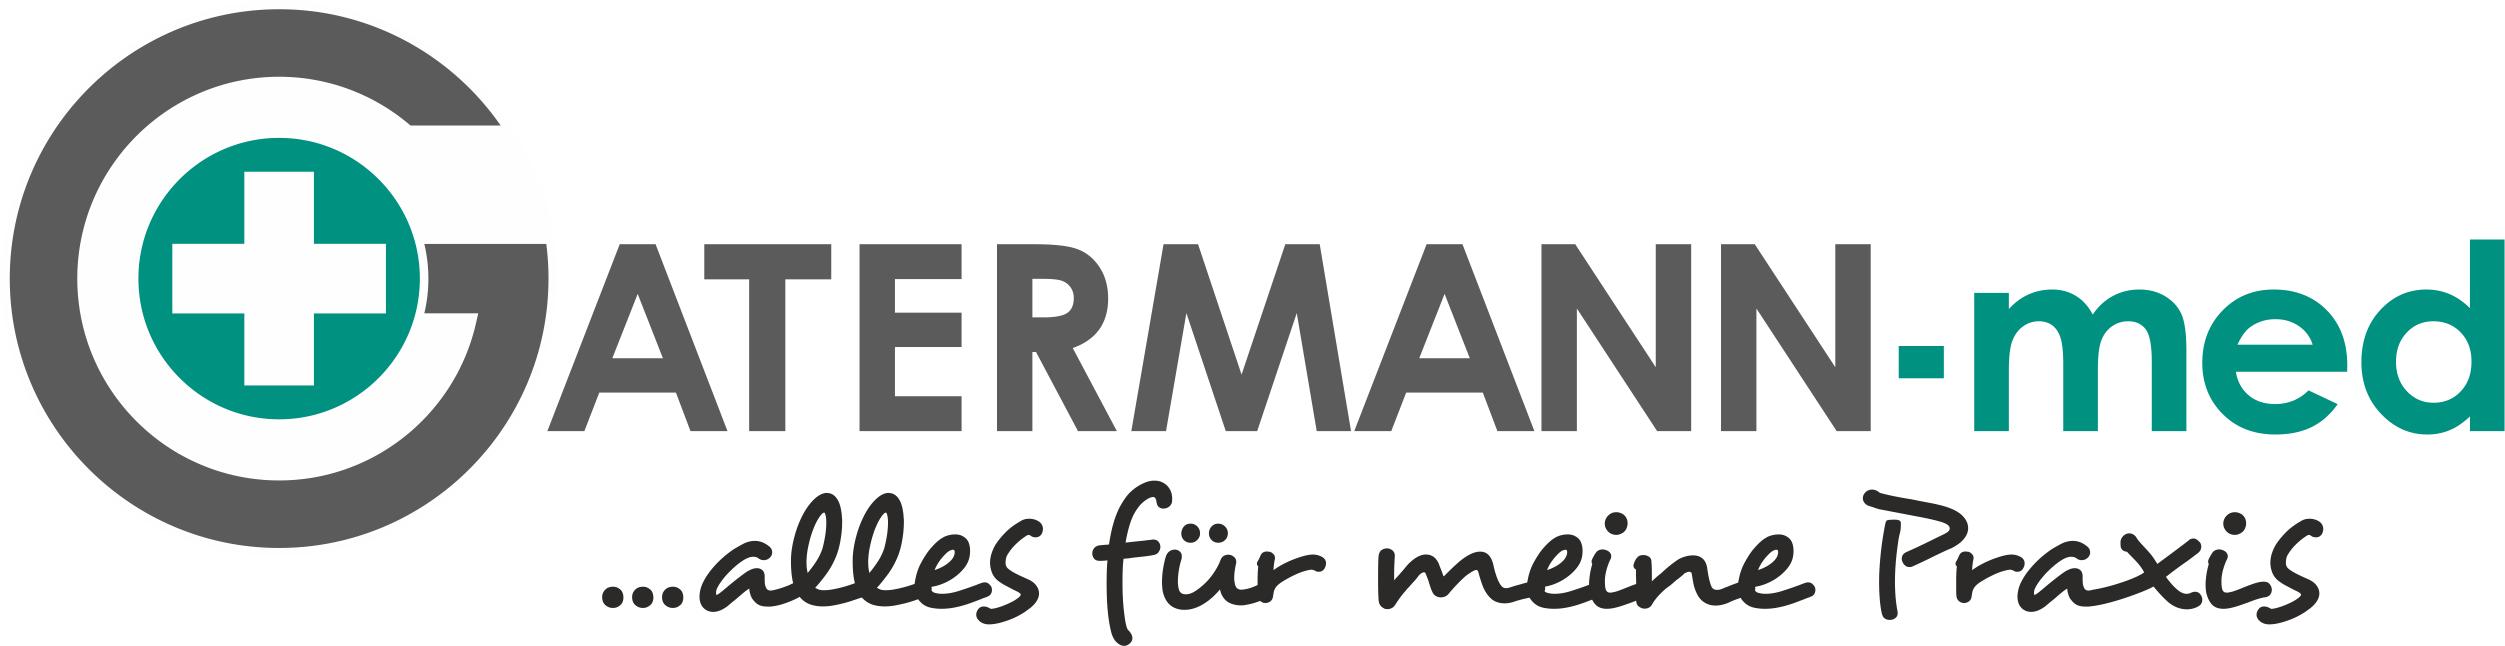 Gatermann GmbH & Co. KG